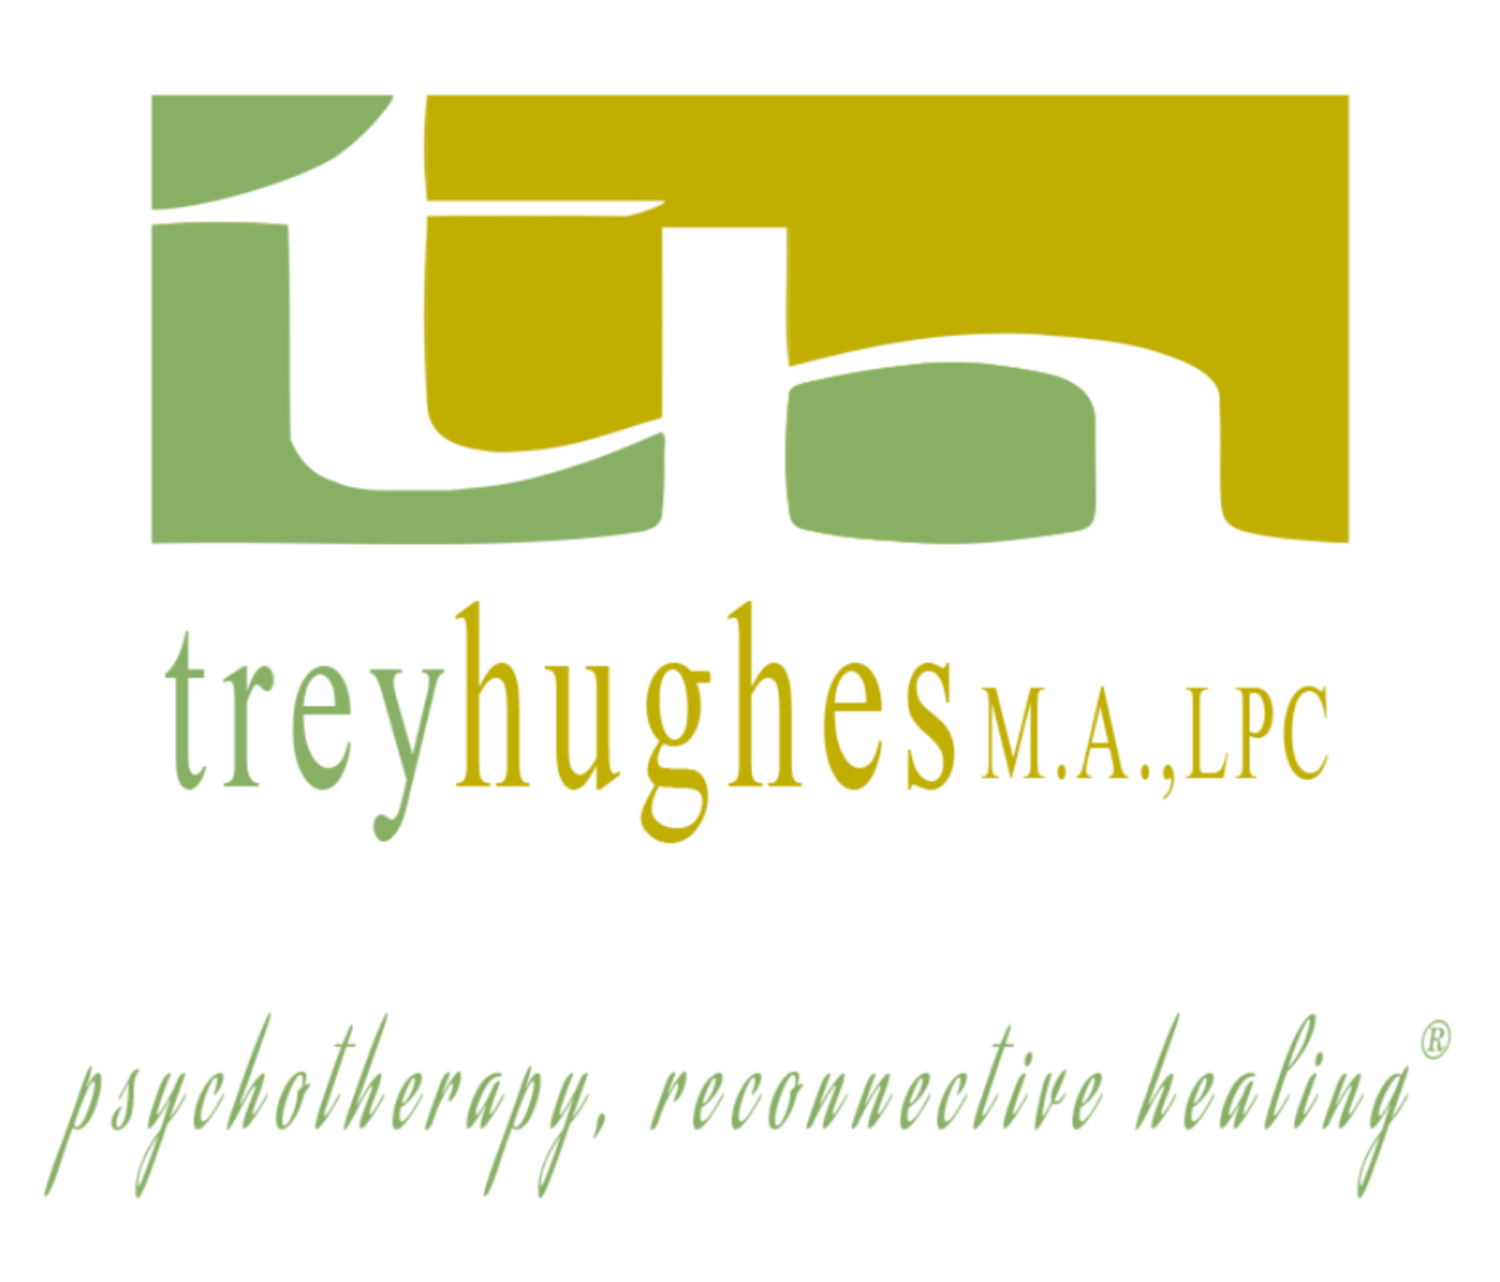 Trey Hughes